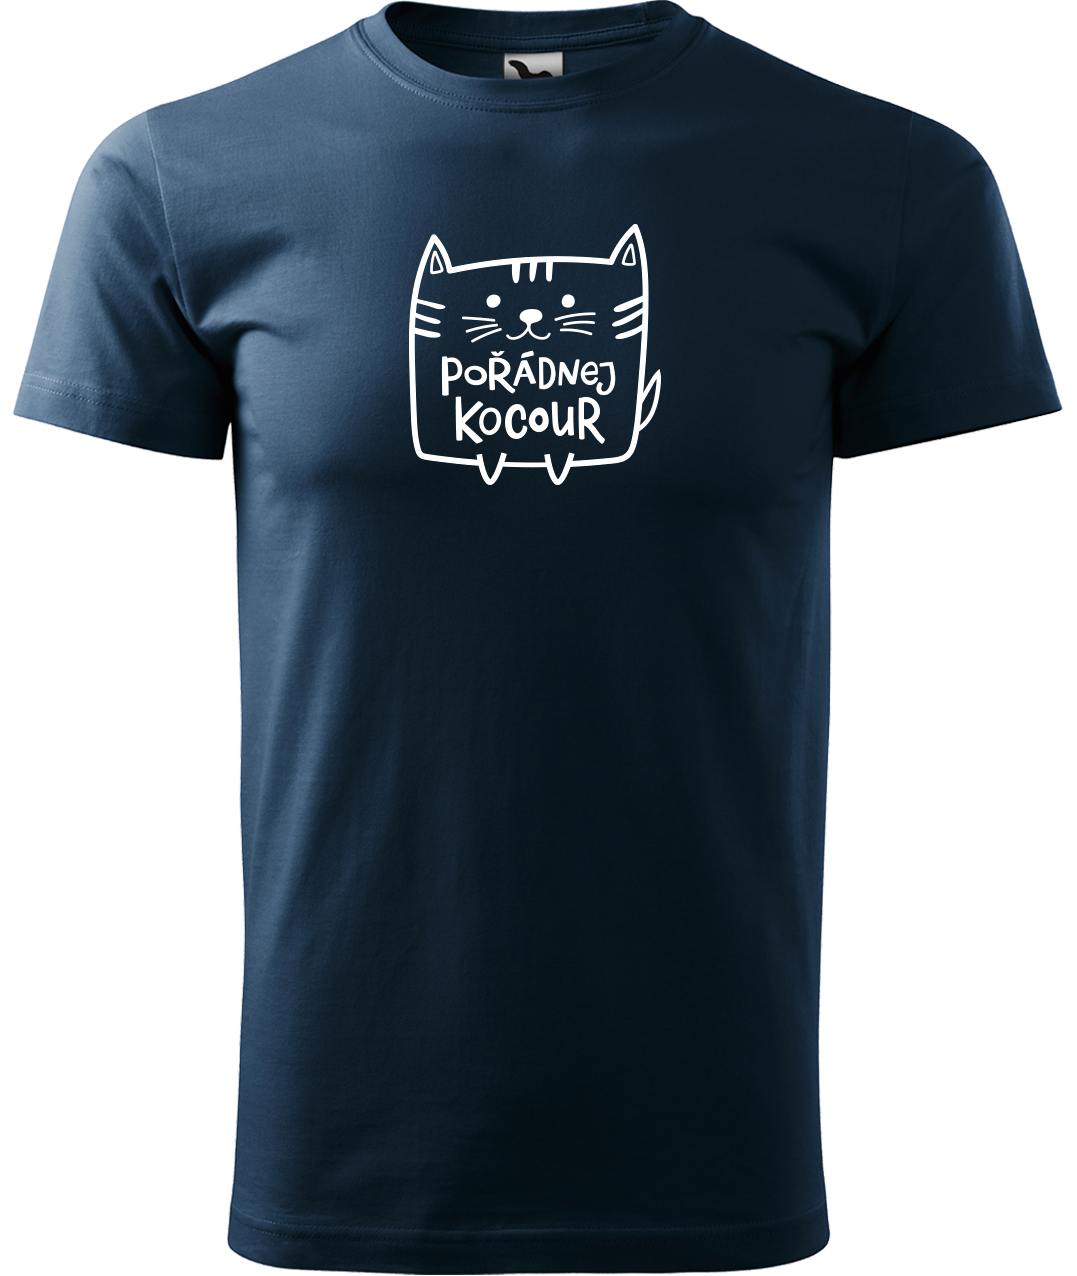 Pánské tričko s kočkou - Pořádnej kocour Velikost: S, Barva: Námořní modrá (02)